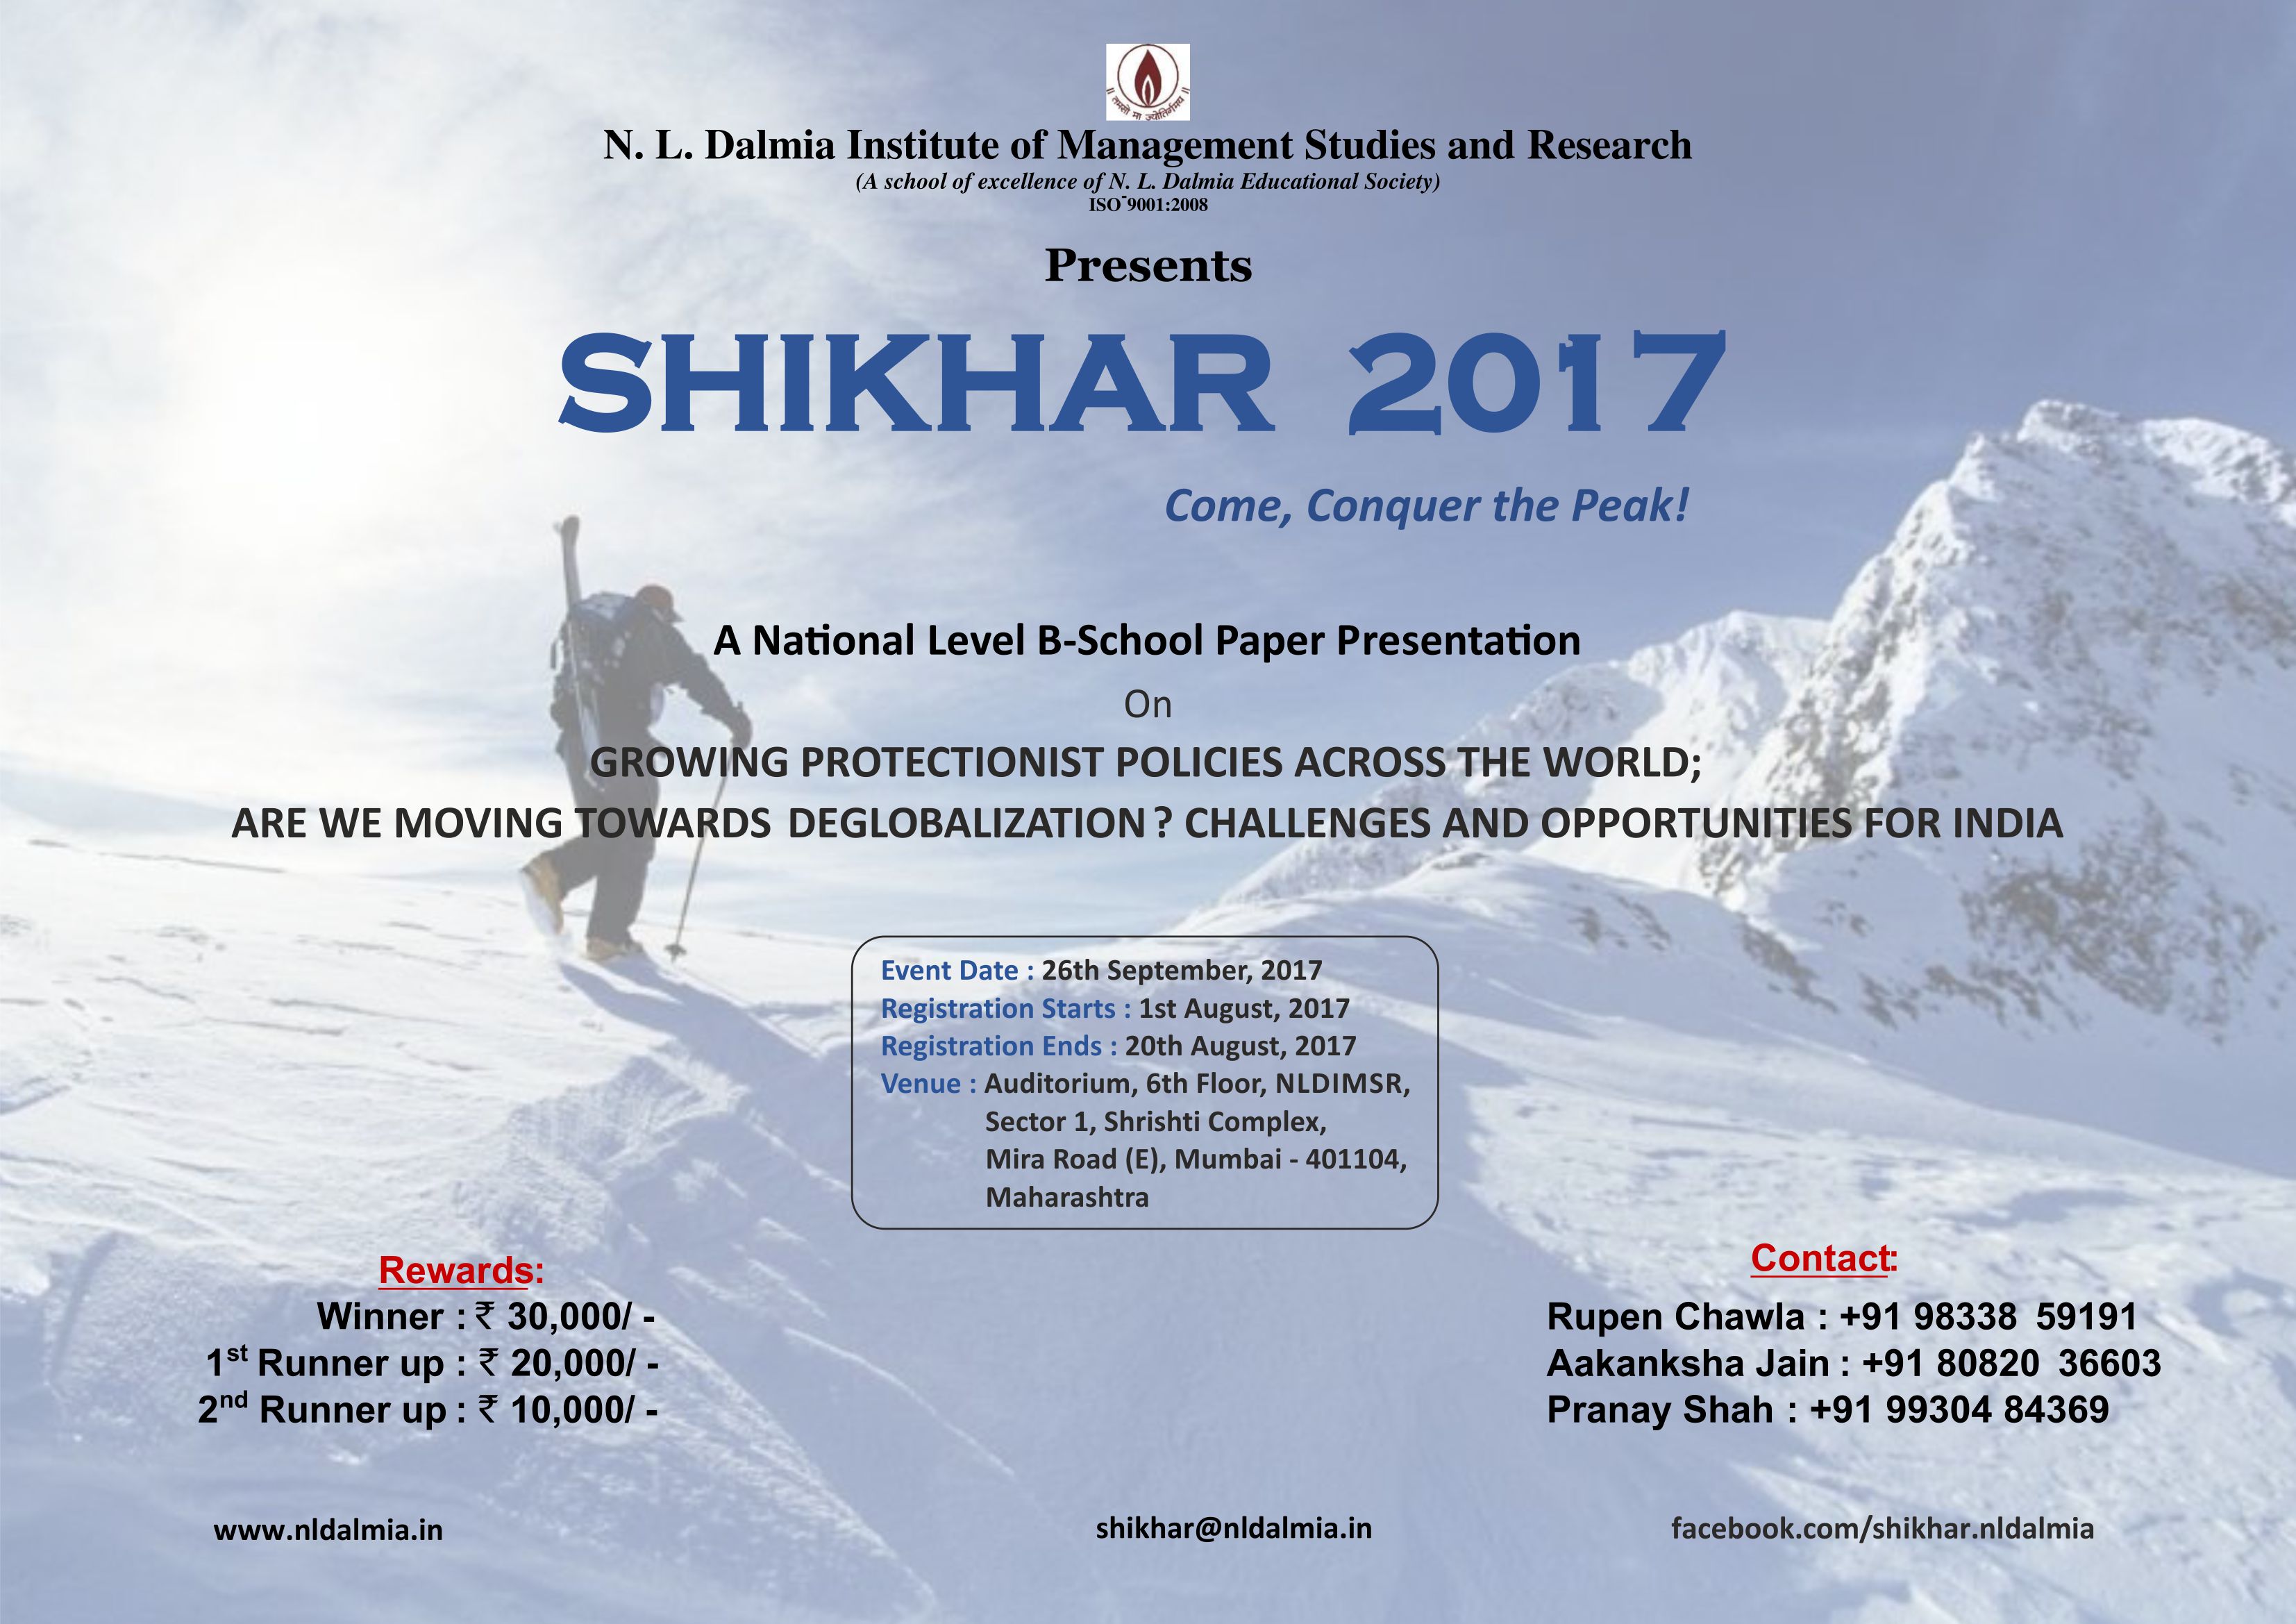 Shikhar 2017